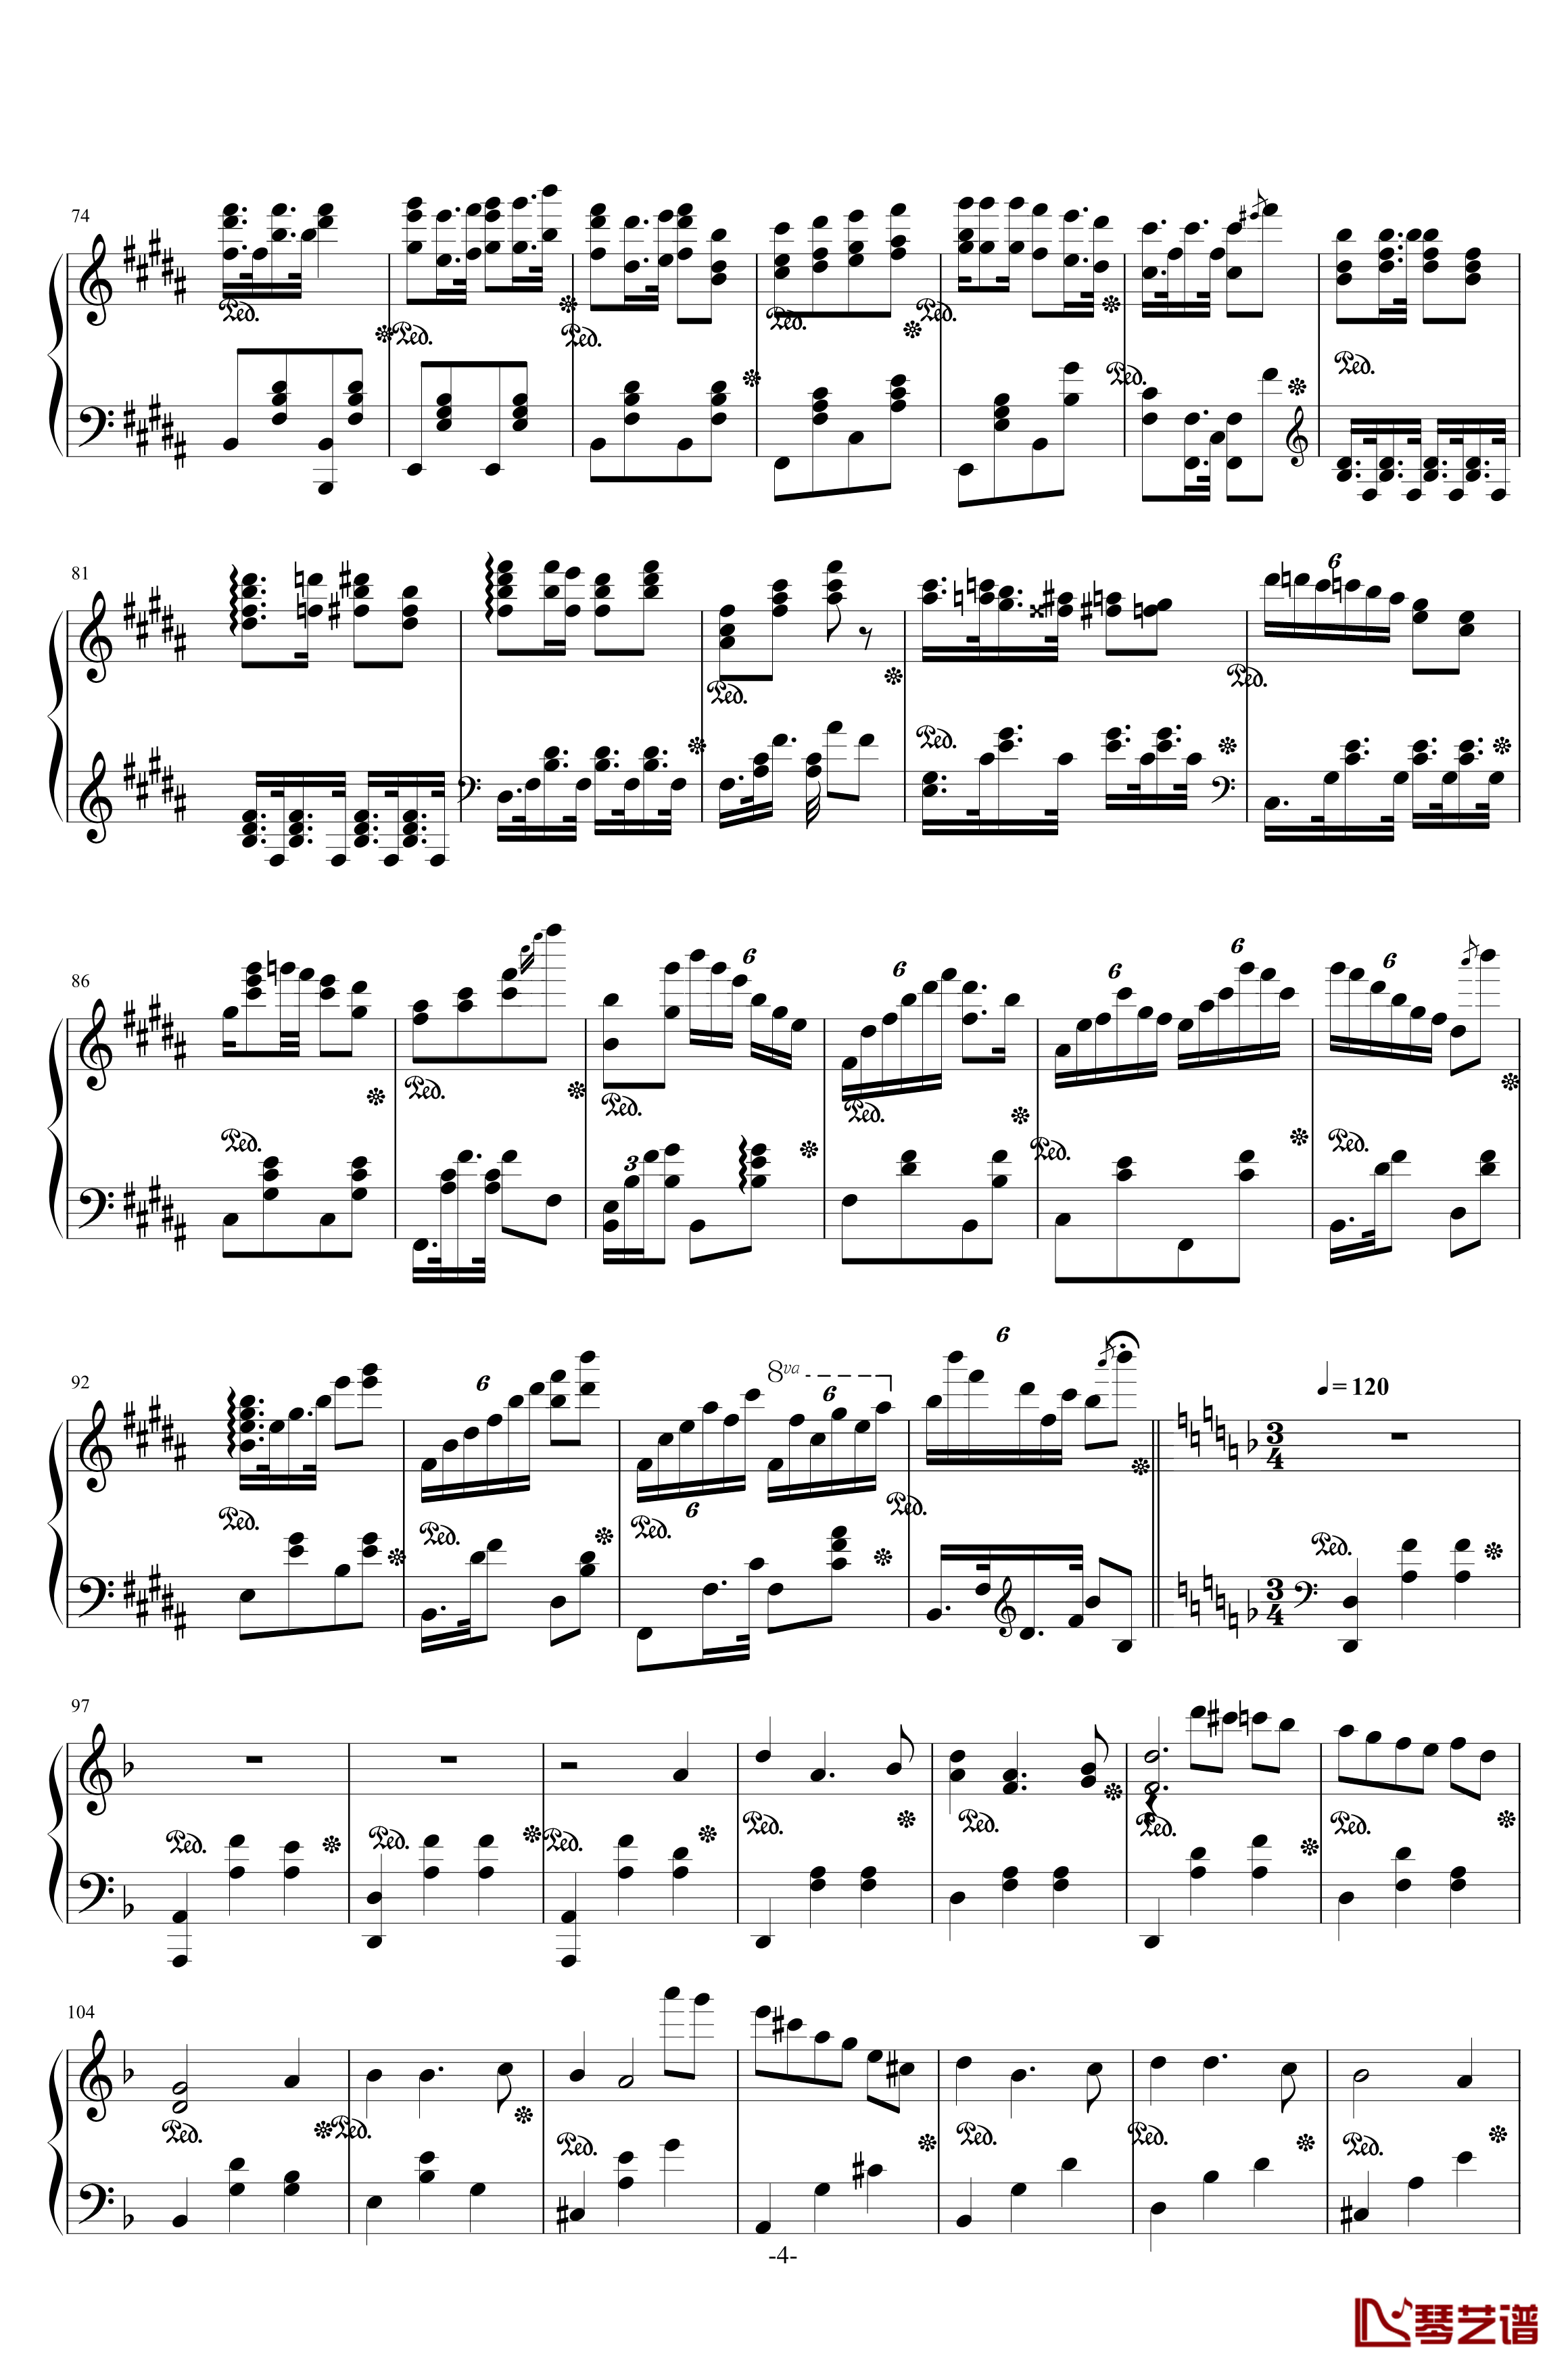 西安音乐学院校歌钢琴谱-校园歌曲4